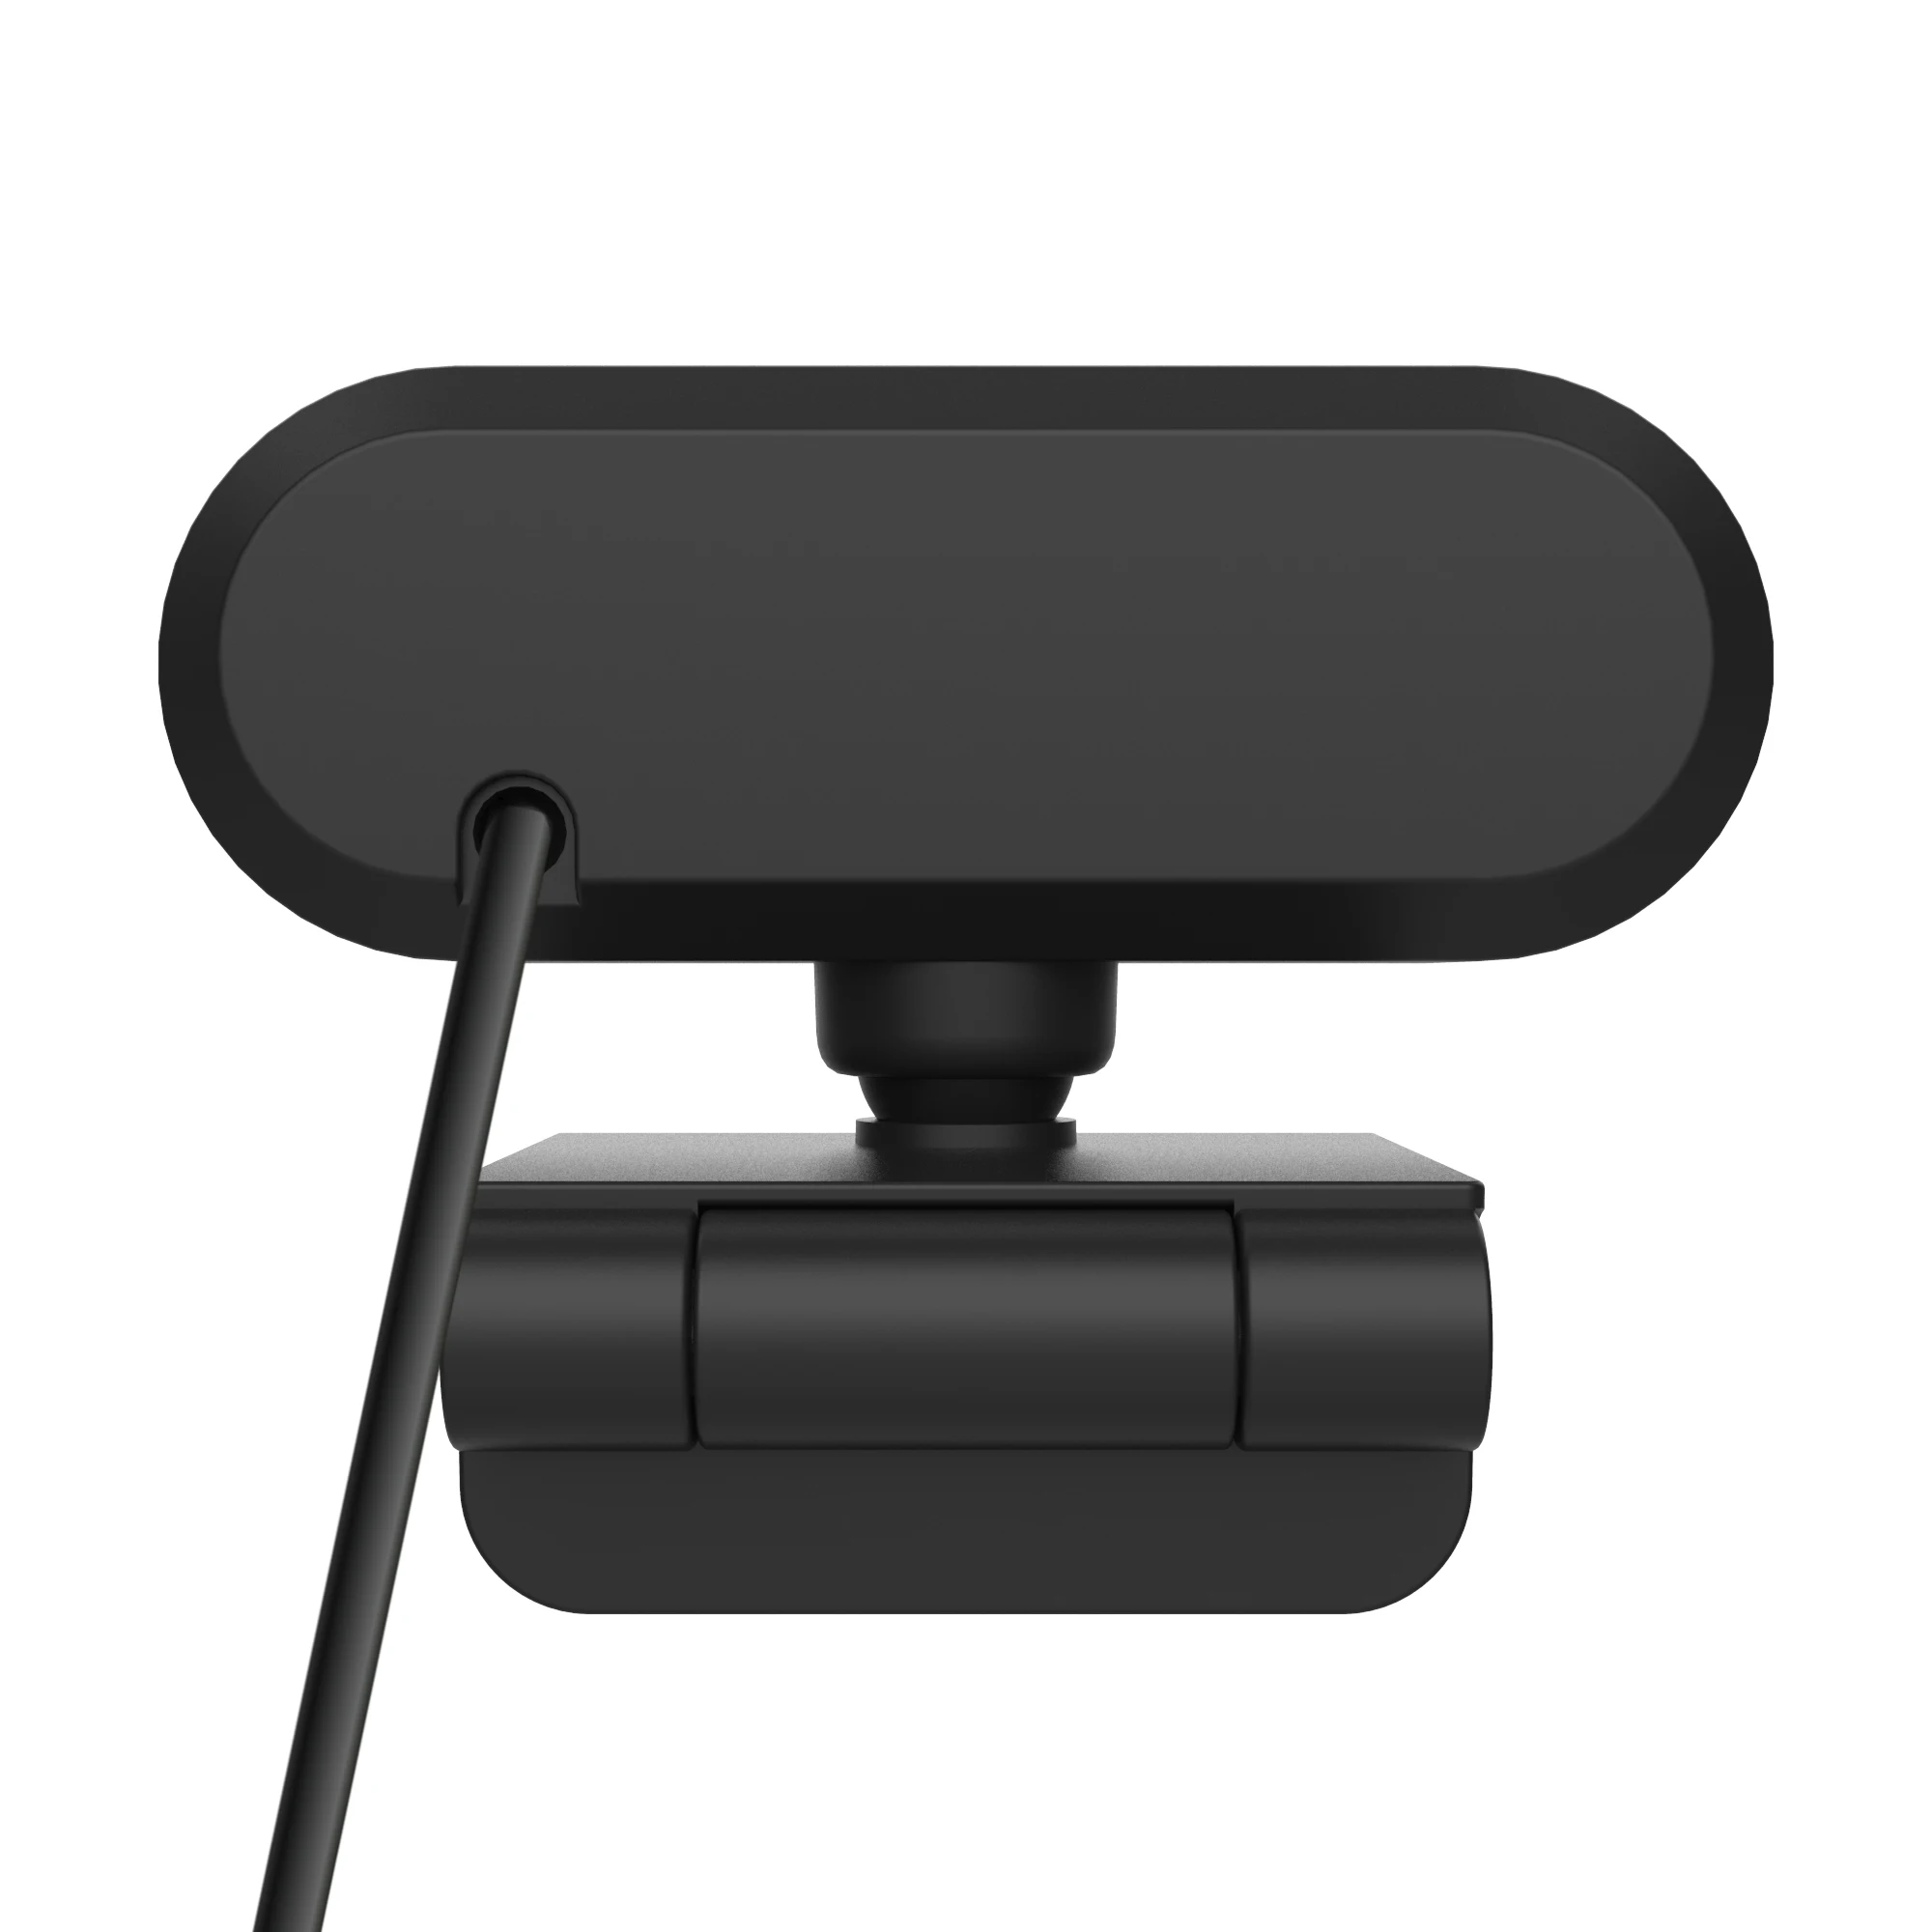 USB HD Webcam autofocus Built-in Microphone 1920 X 1080P 30fps Web Cam Camera for Desktop Laptops Game PC images - 6